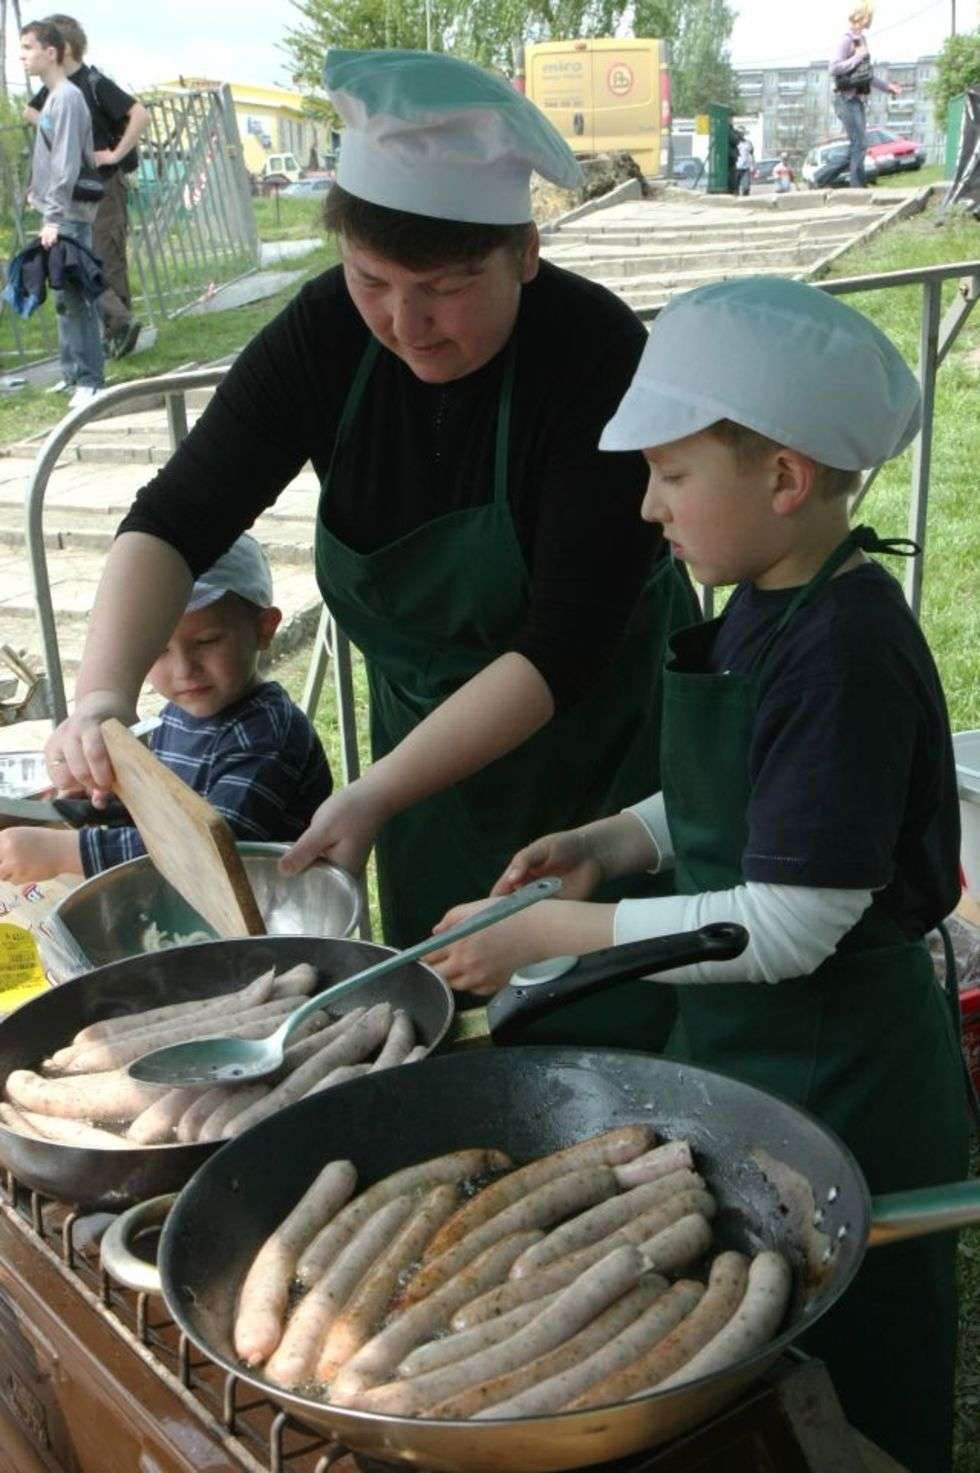  Burmistrz Poniatowej Lilla Stefanek gotuje z synami Mikolajem i Mackiem kielbaski po prowansalsku